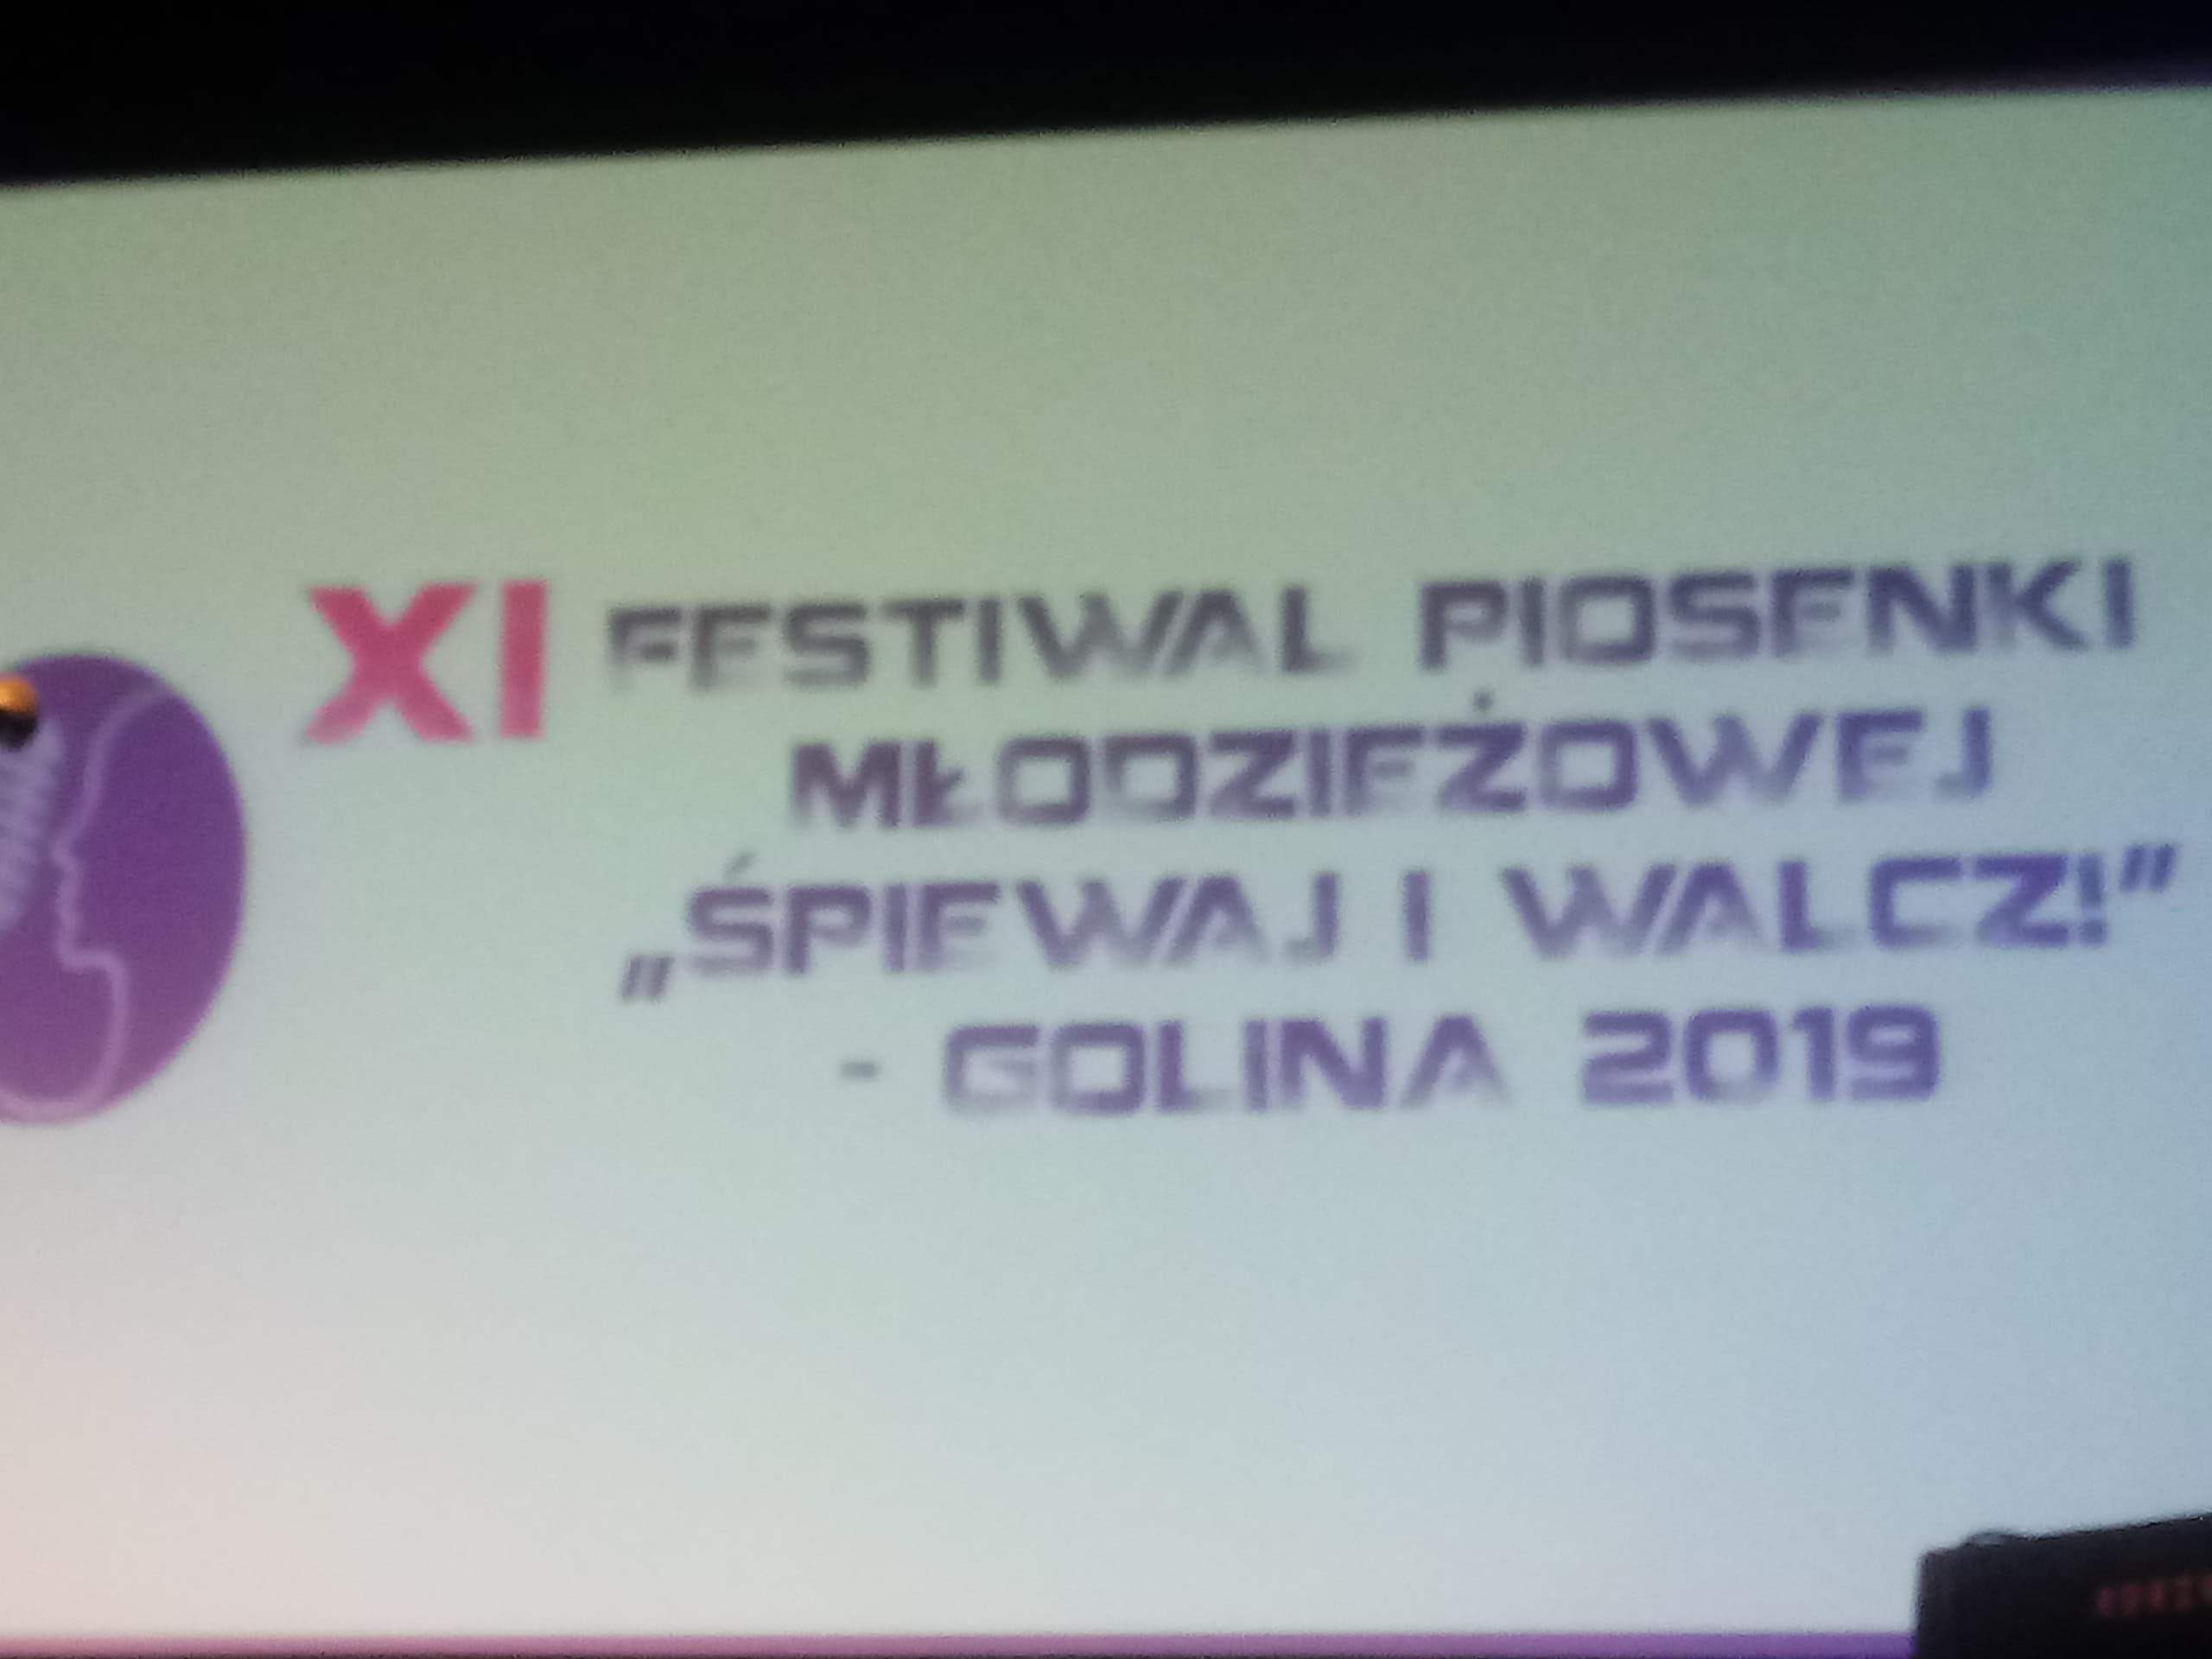 XI Festiwalu Piosenki Modzieowej PIEWAJ I WALCZ! Golina 2019